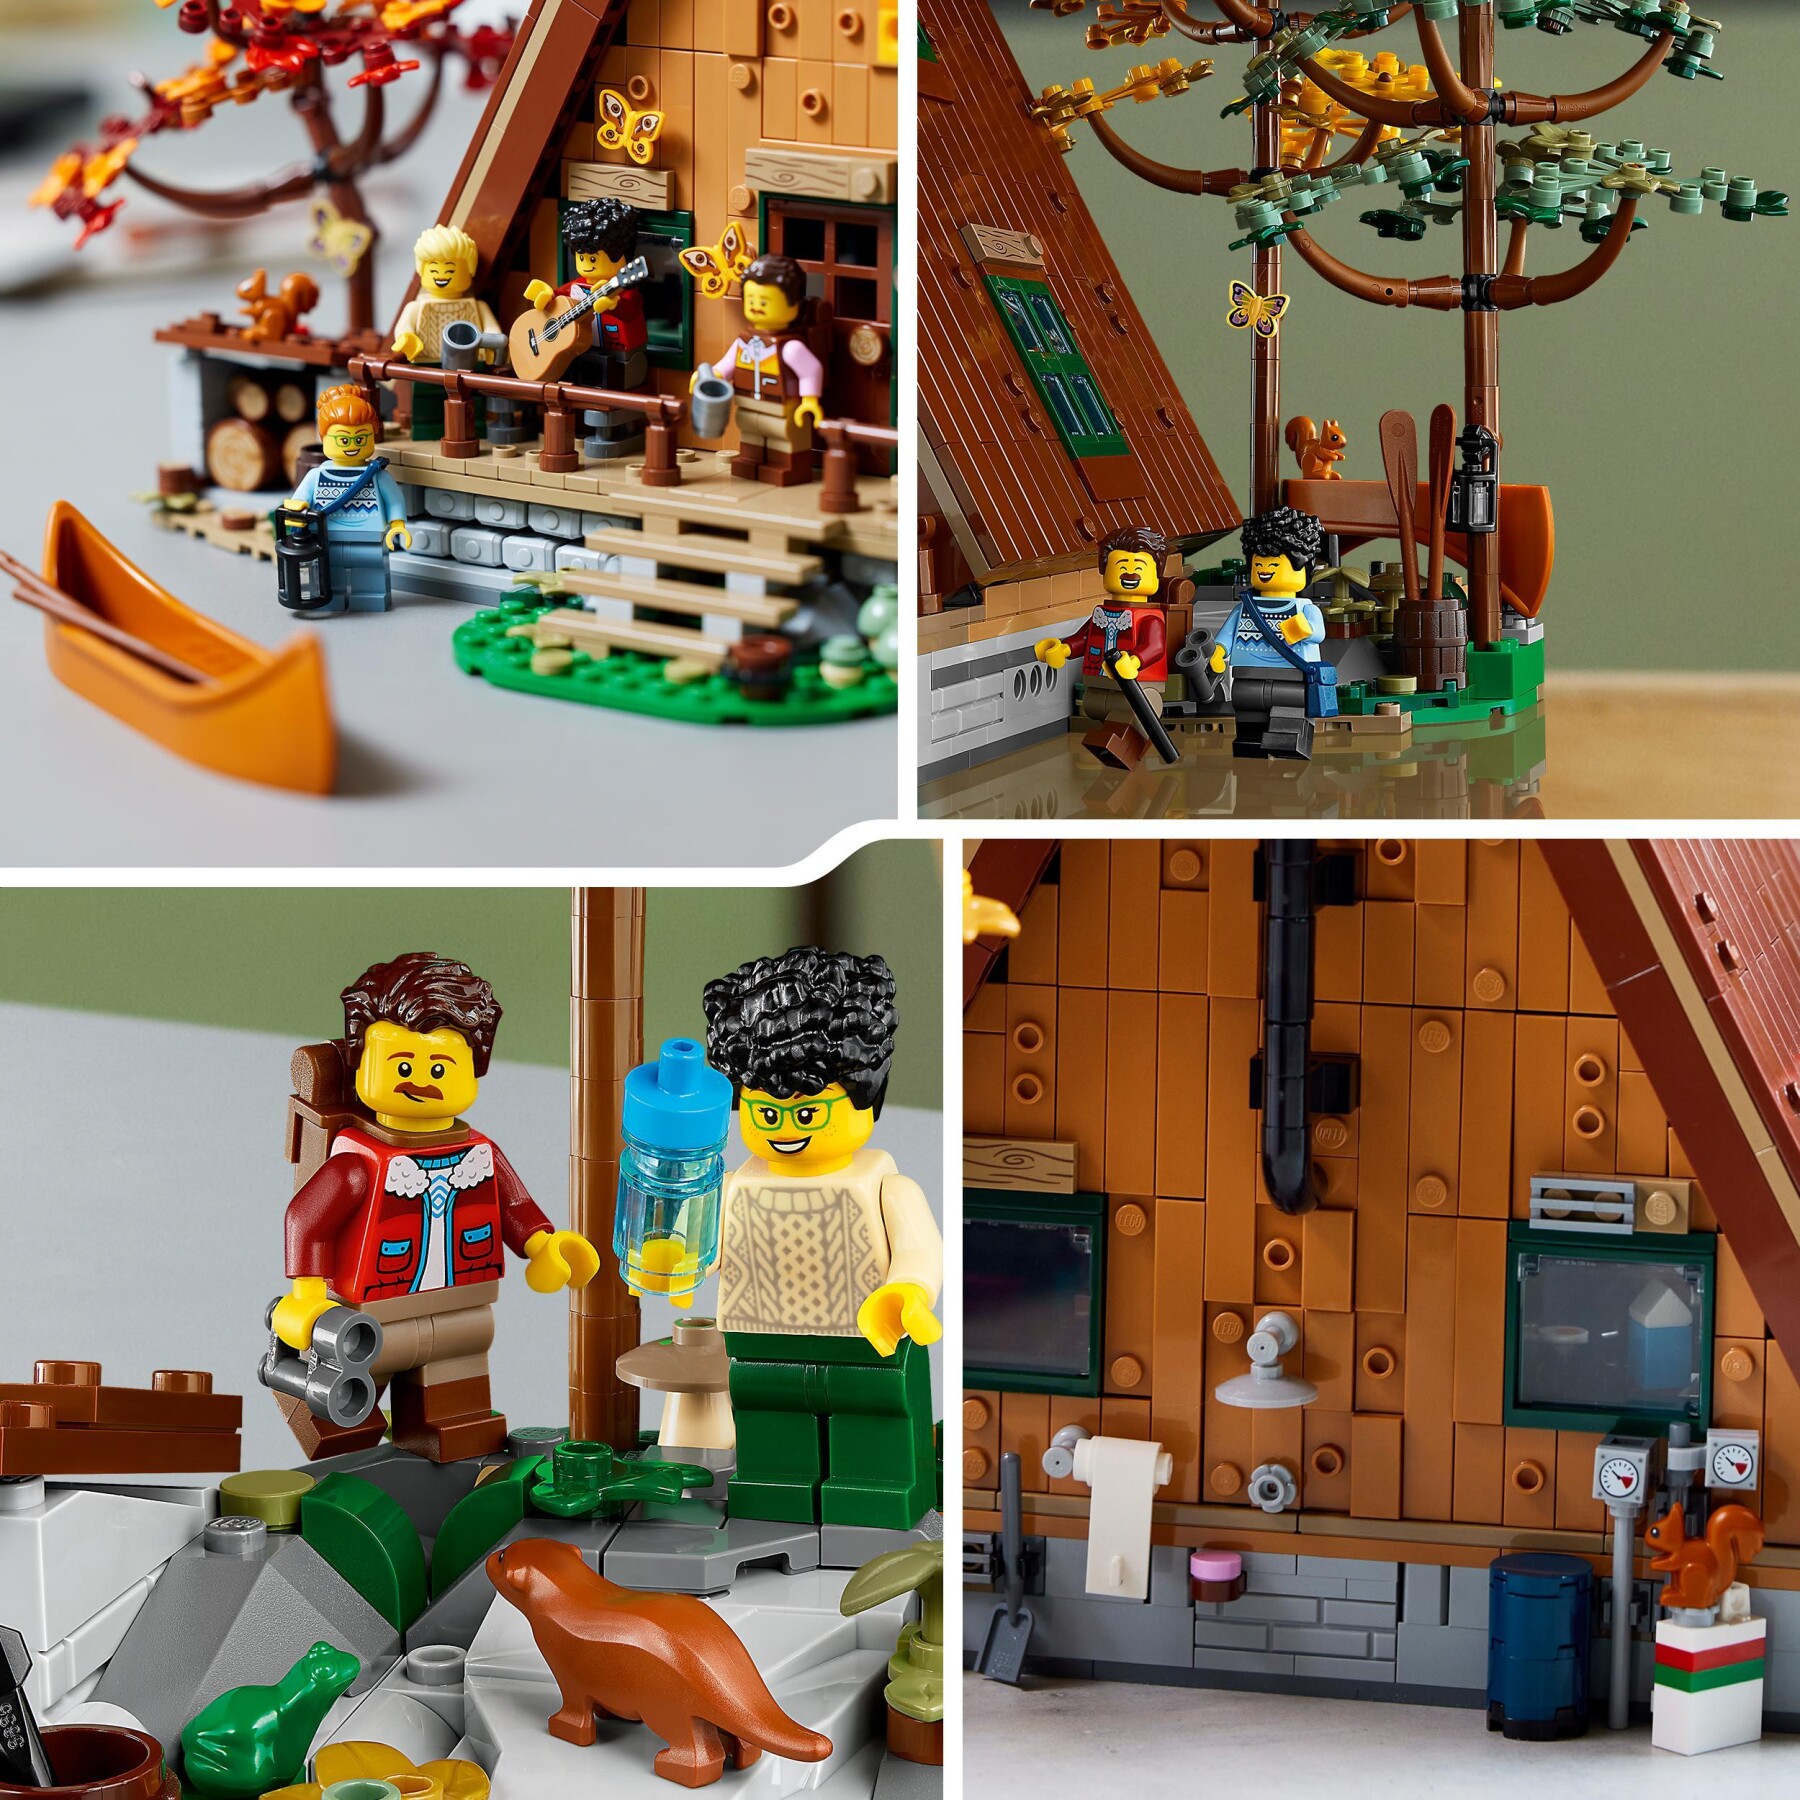 Lego ideas 21338 baita, kit modellino casa da costruire per adulti con 4  minifigure personalizzabili e di animali selvatici - Toys Center